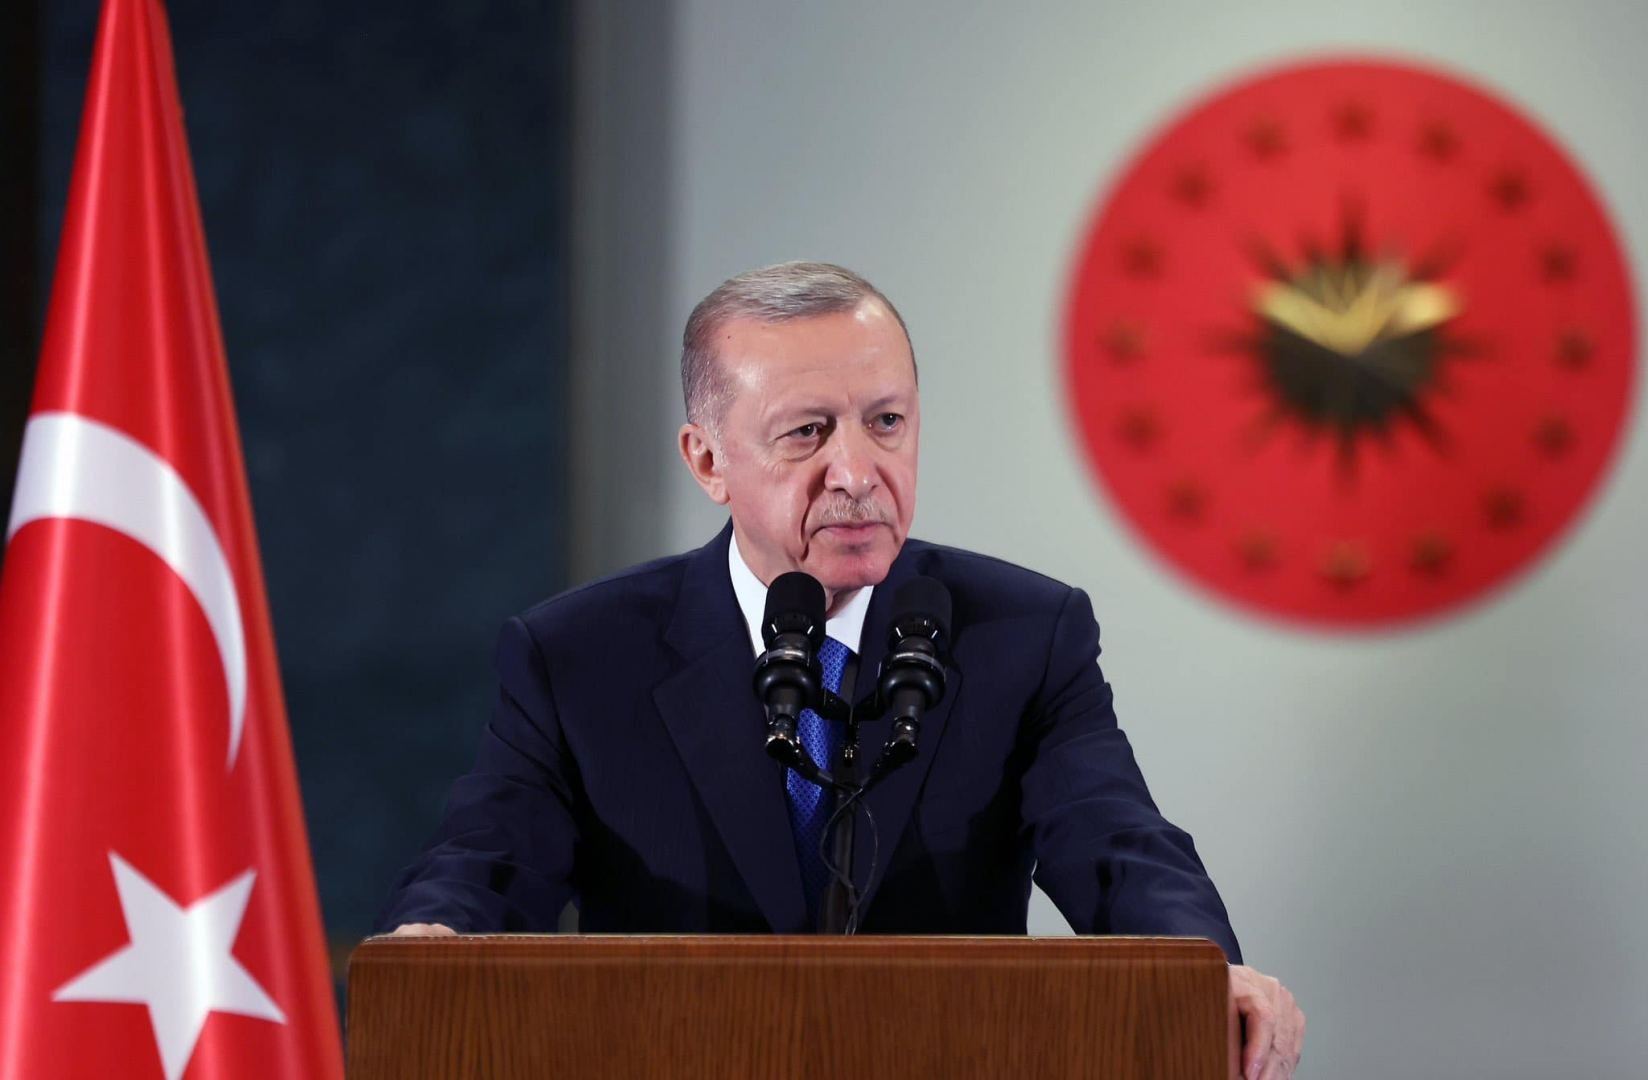 Тюркский мир с сильными традициями государственности переживает новое возрождение - Эрдоган